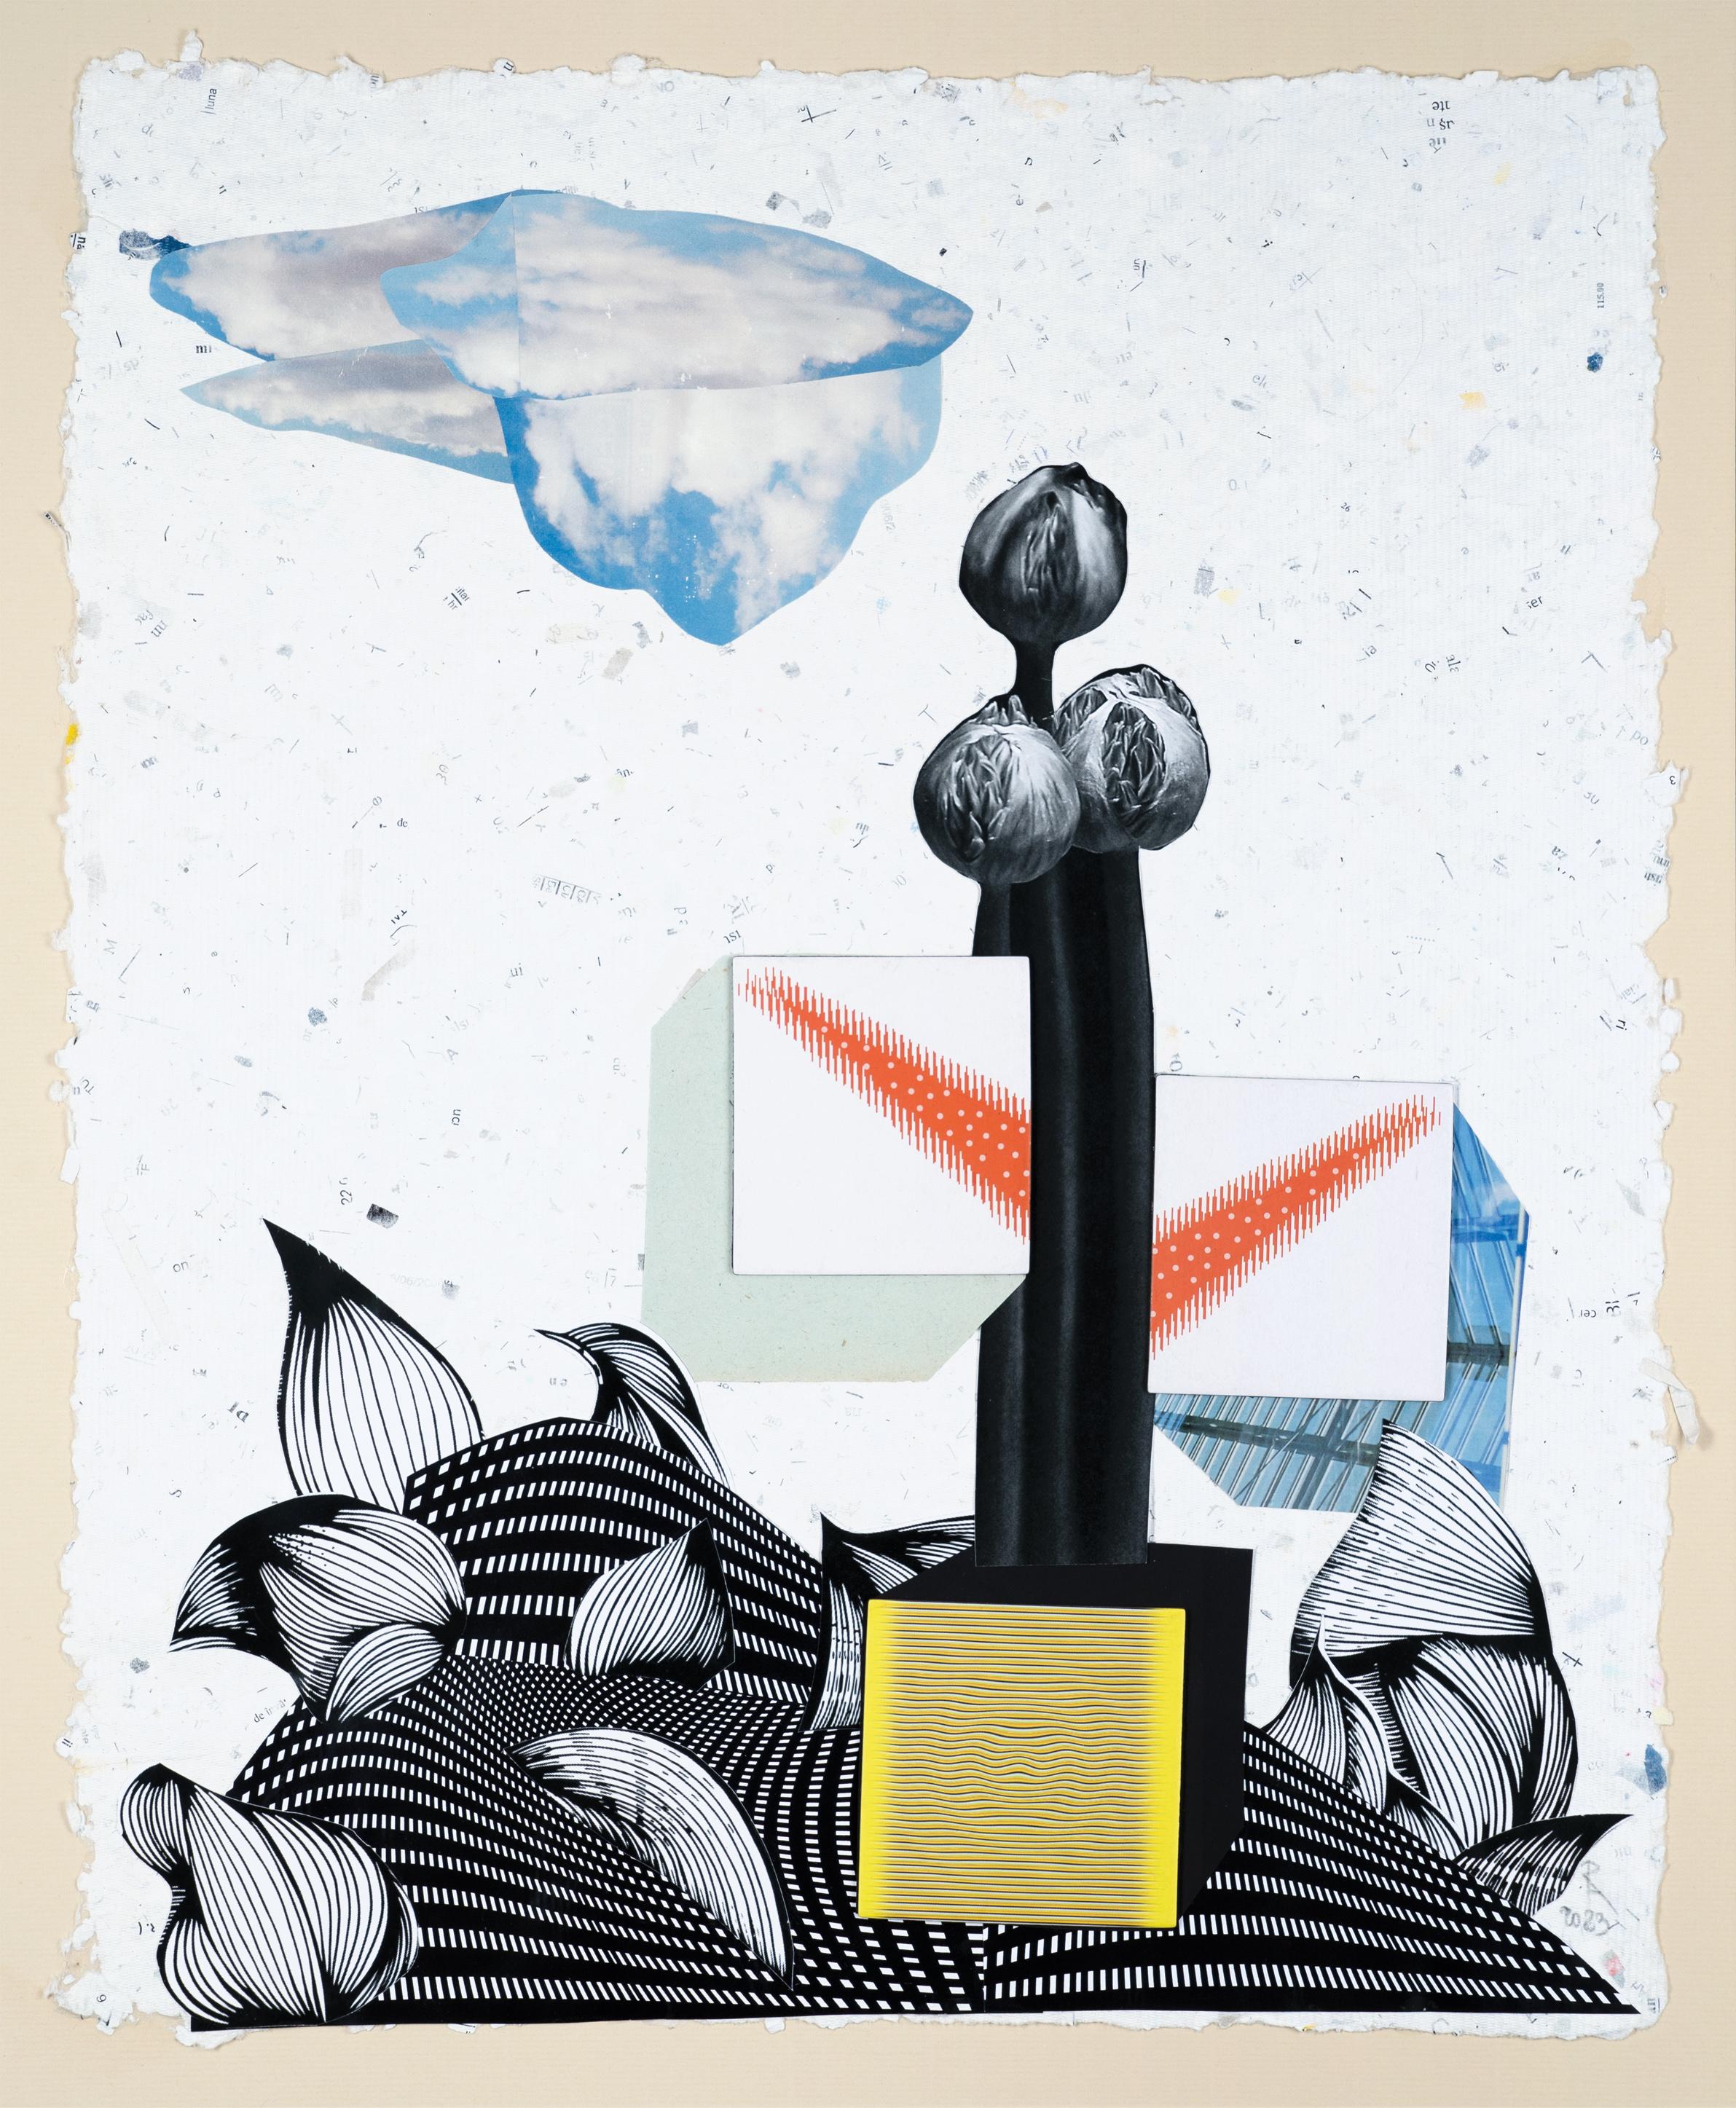 Die Blume – Papier, Landschaft, Collage, 21. Jahrhundert, Surrealismus – Mixed Media Art von Raluca Arnăutu